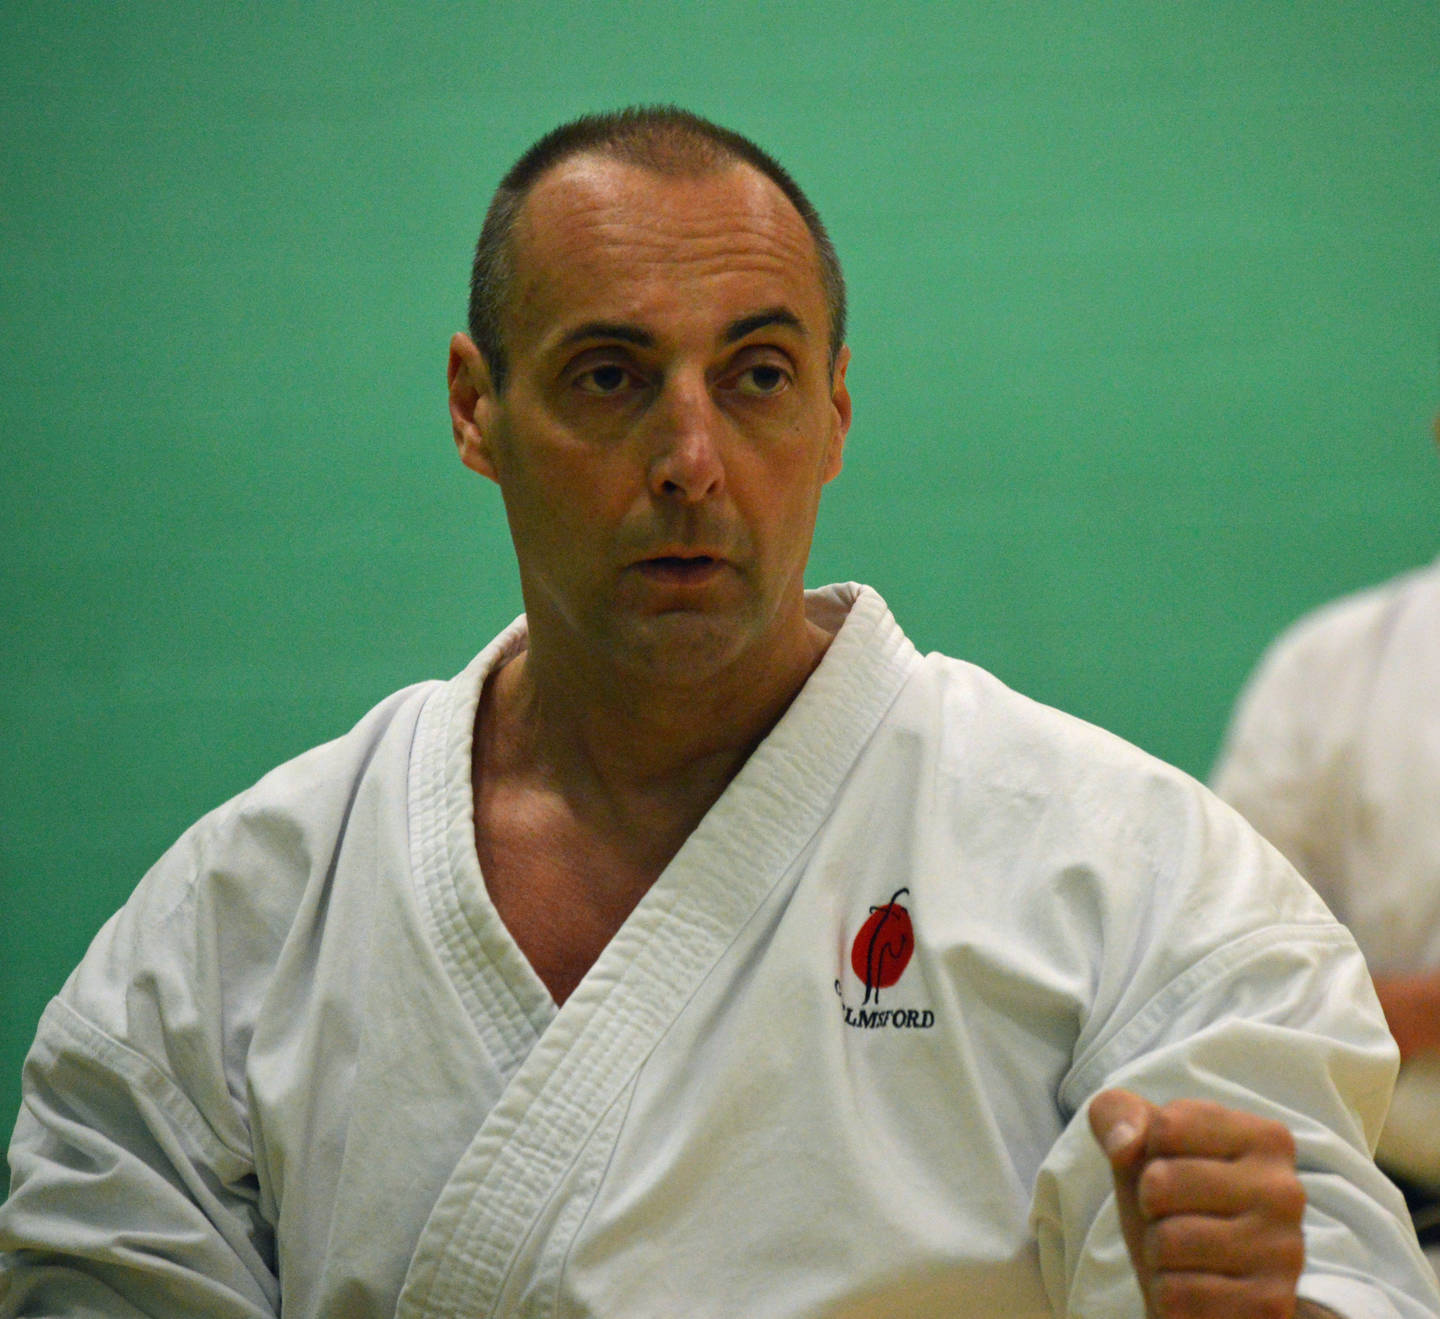 Richard Naylor-Jones practising karate